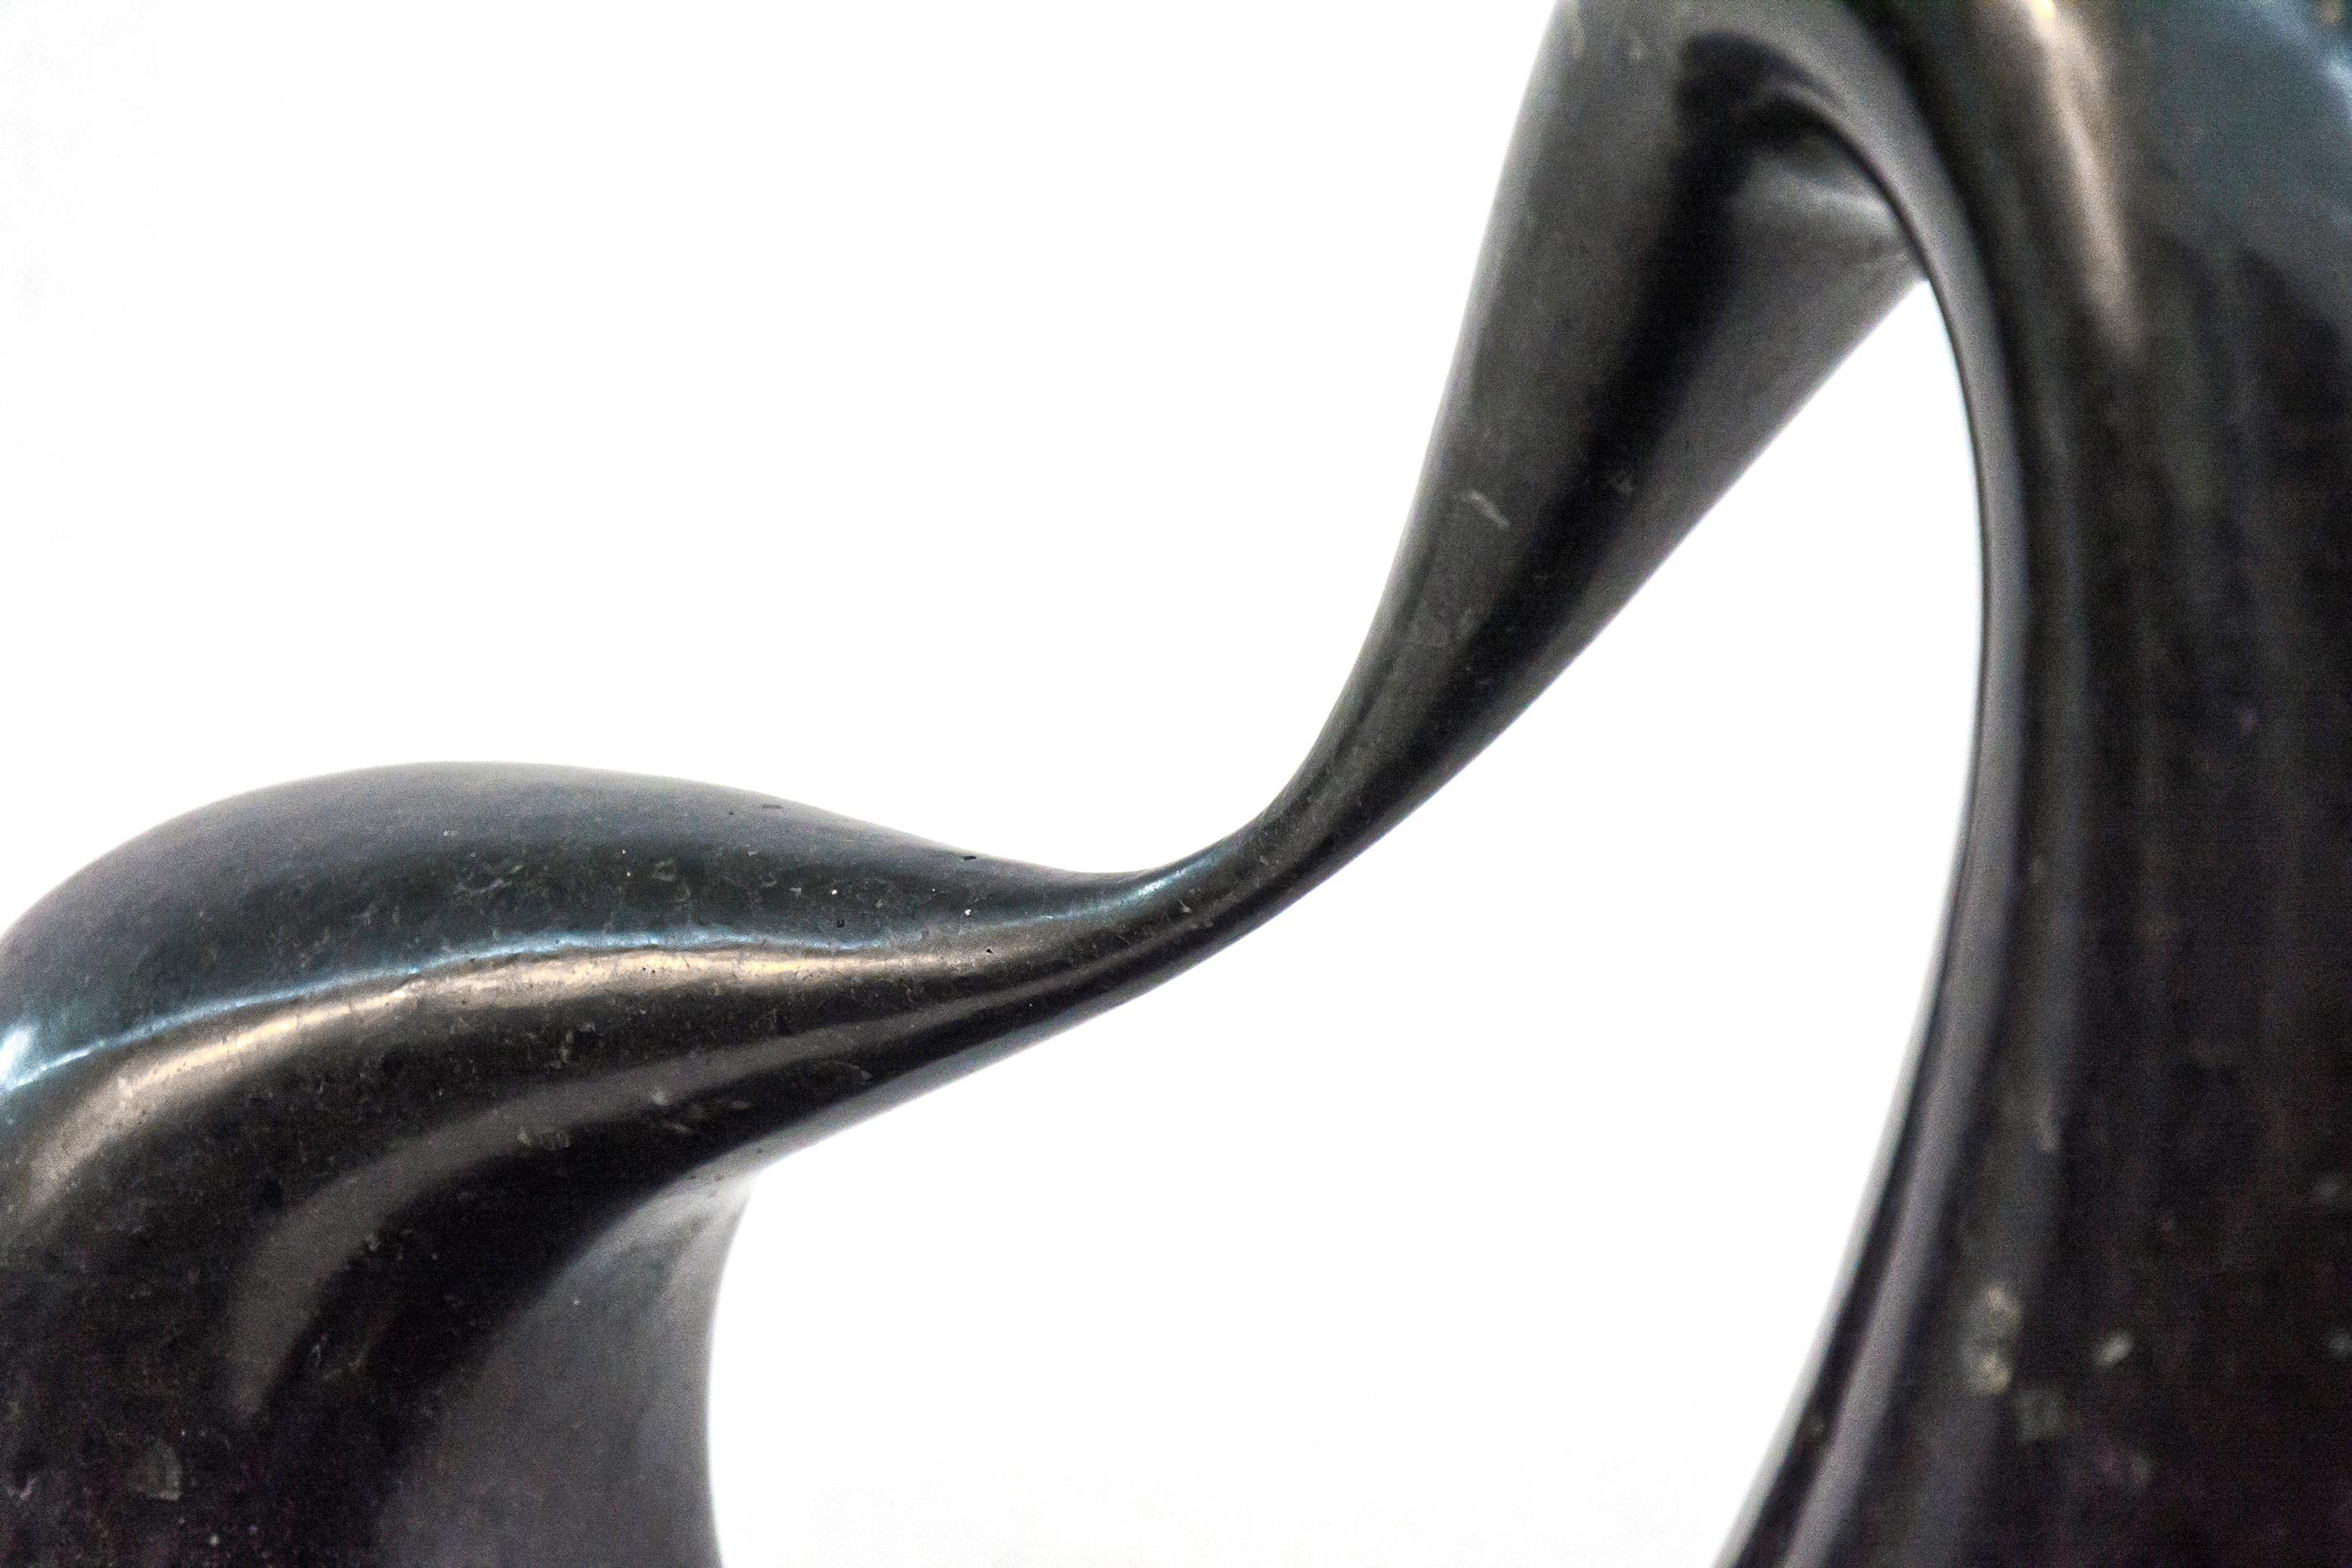 Glatter, schwarzer Marmor mit kupferfarbenen und weißen Sprenkeln wird bei dieser Tischskulptur zu einer dicken Schlaufe geformt, die an einer Seite dünn ausgezogen ist. Die auf einem flachen Metallsockel stehende, abgeflachte Schlaufe weist einen